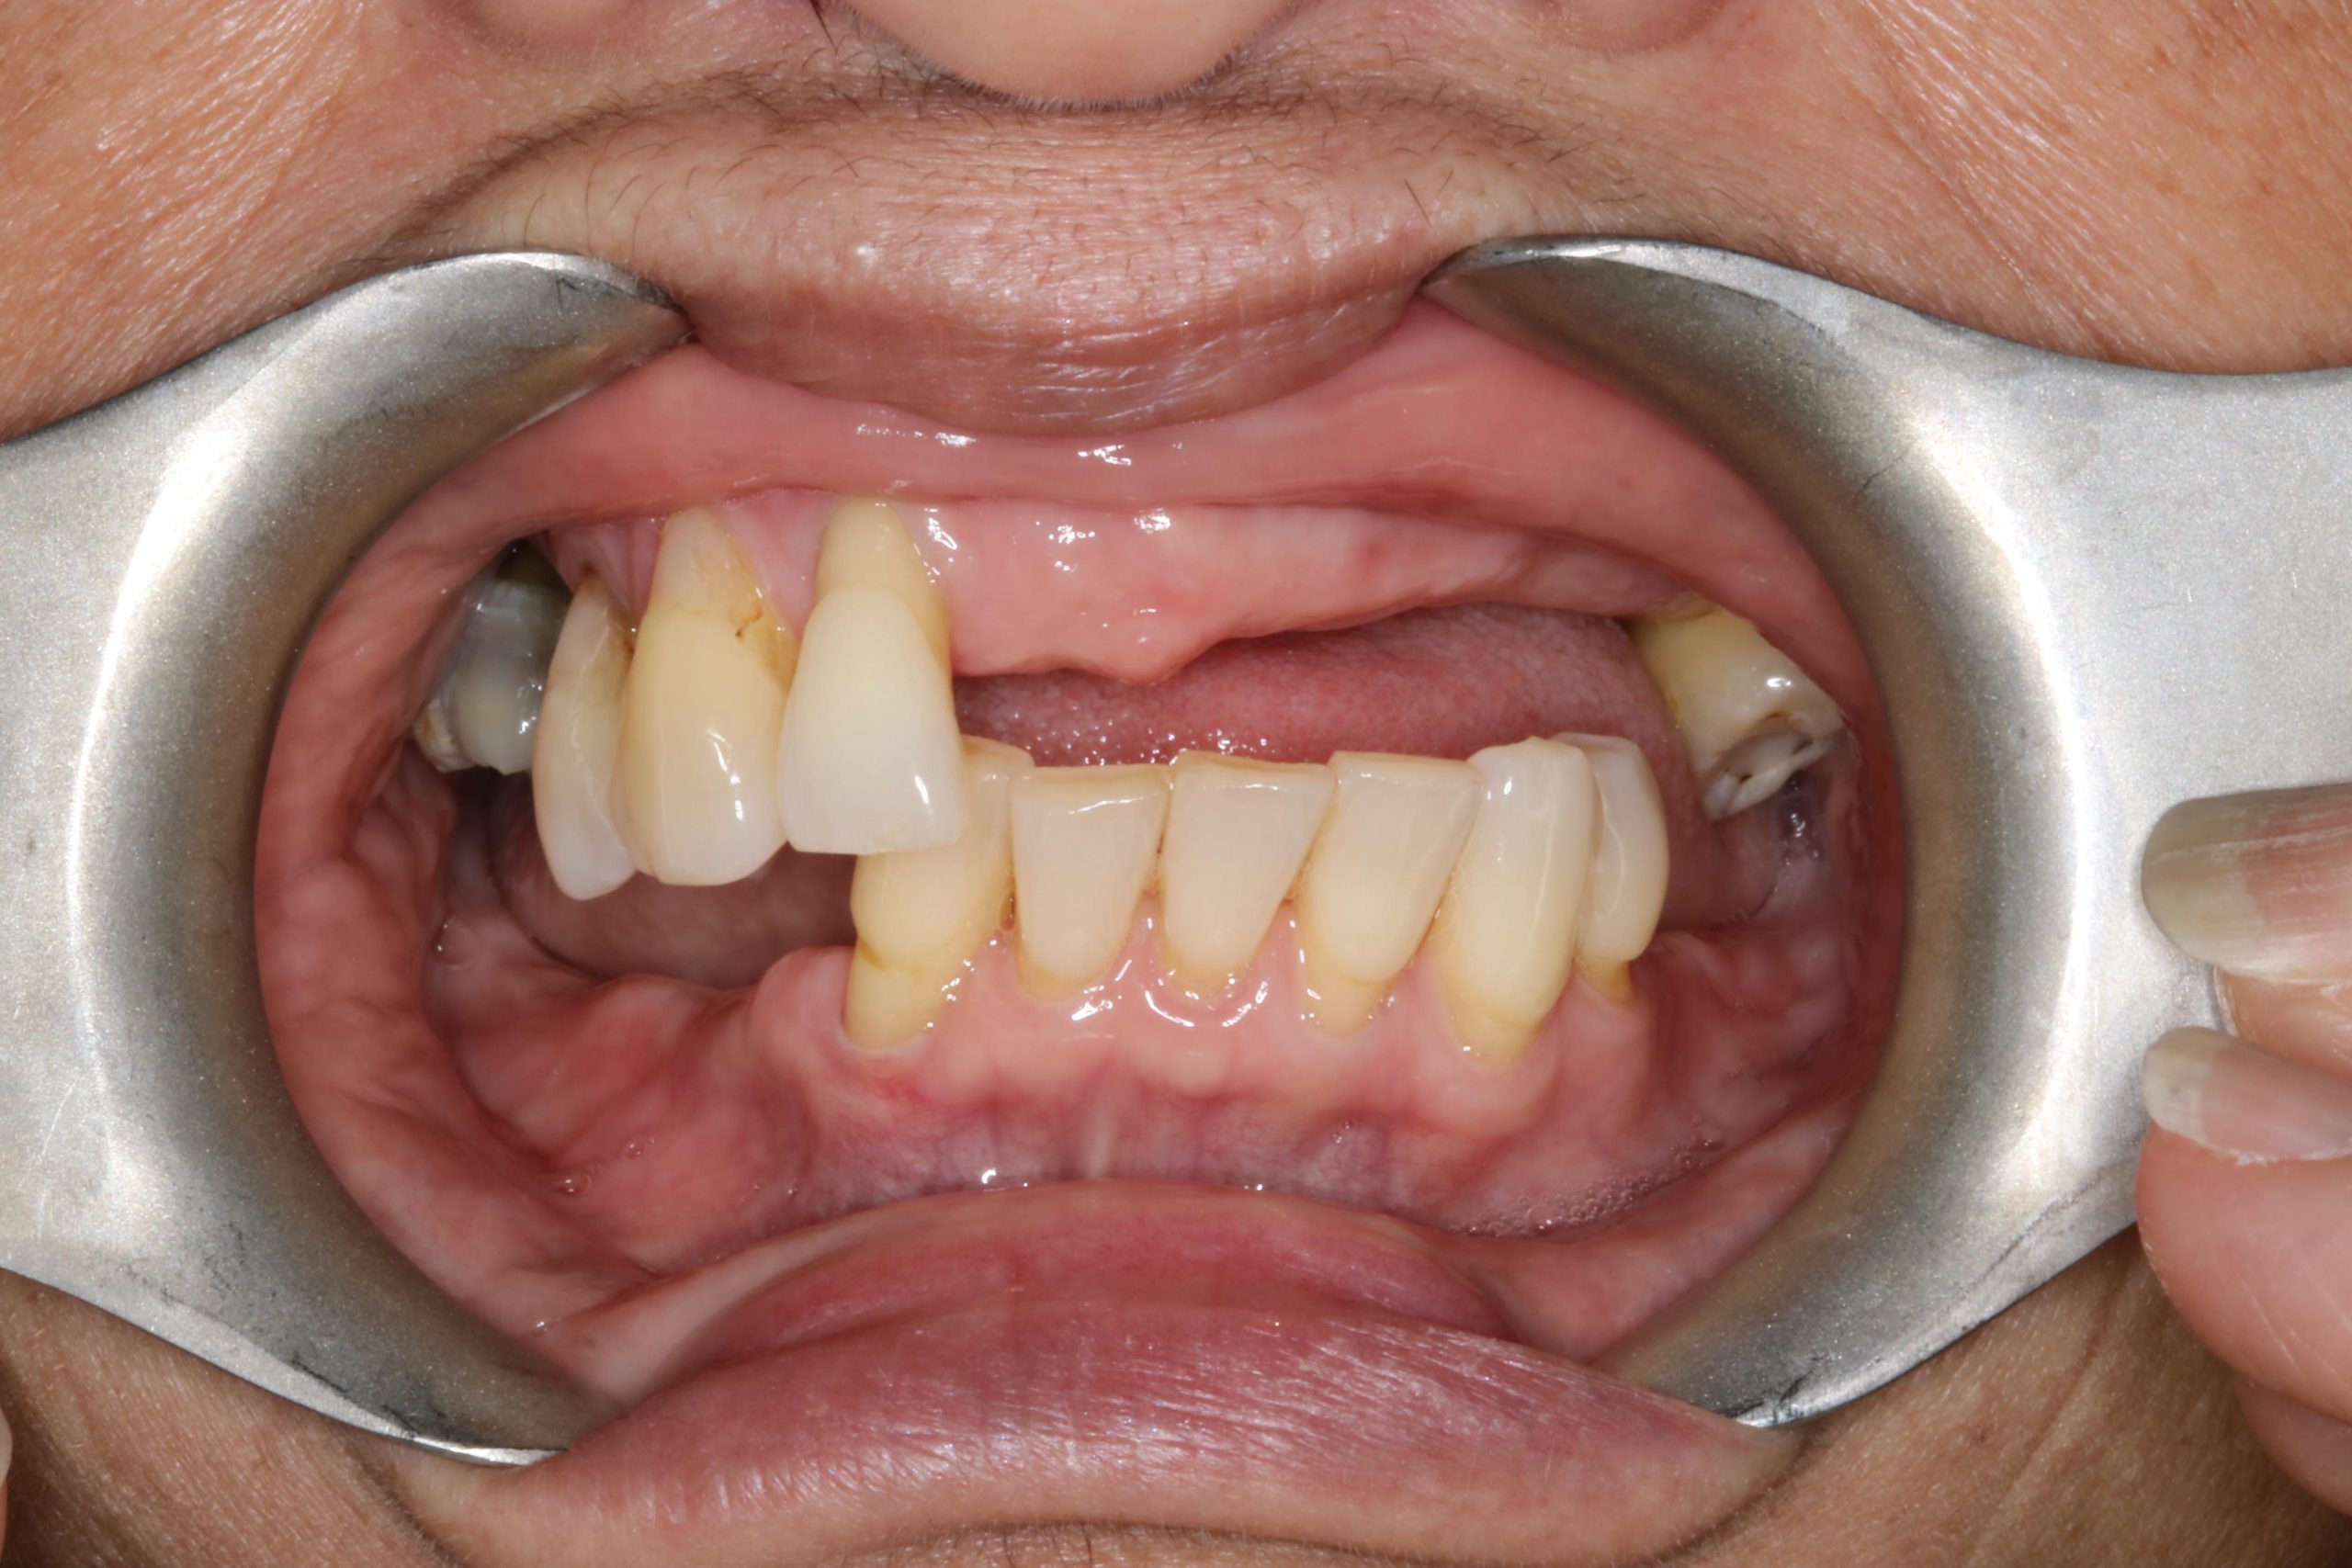 After dental implants